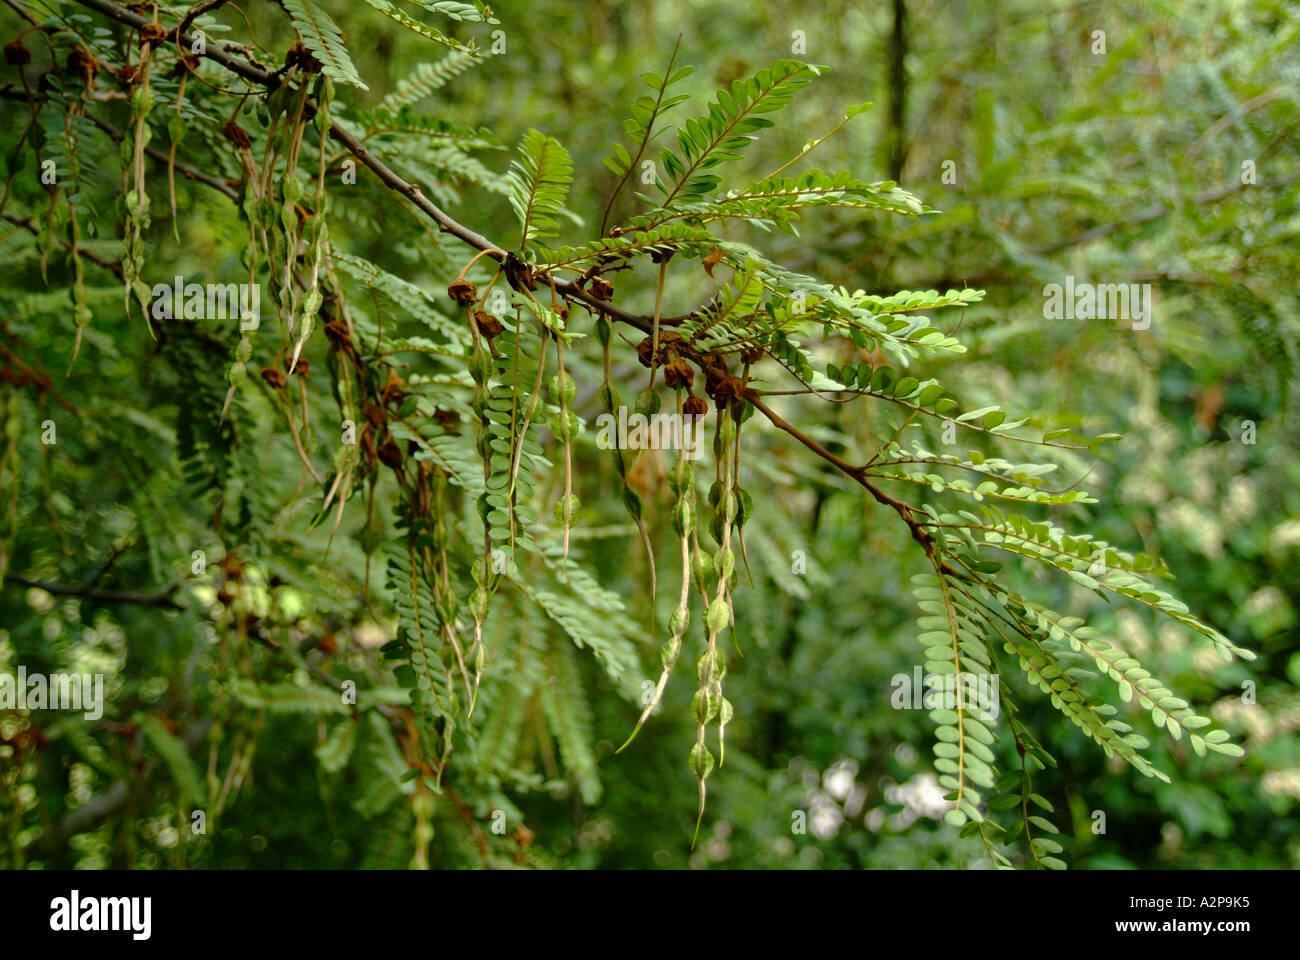 Kowhai (Sophora tetraptera) native New Zealand plant Stock Photo